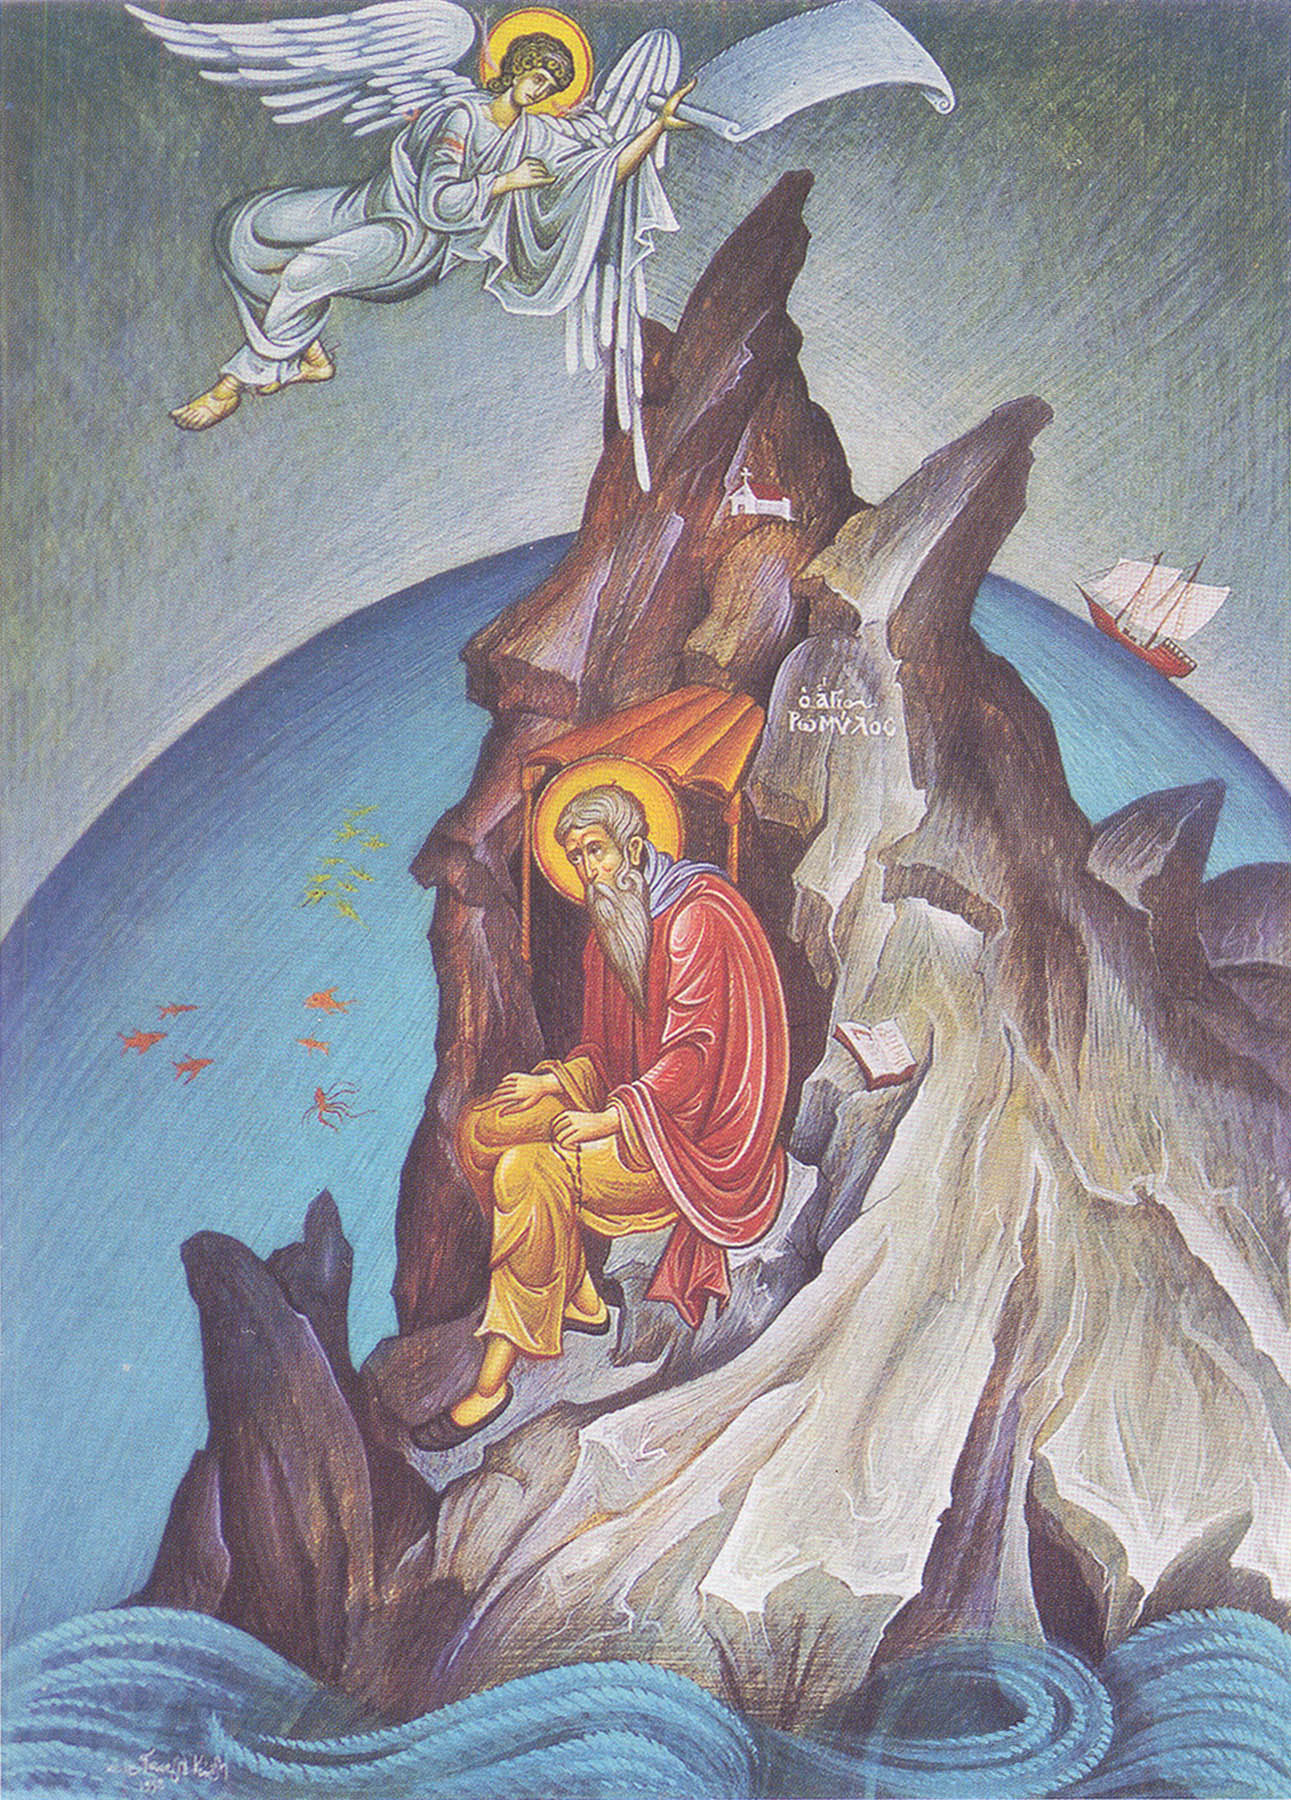 Όσιος Ρωμύλος της Ραβάνιτσας. Σύγχρονη εικόνα Ι.Μ.Δοχειαρίου. Από το βιβλίο του Μωυσέως Μοναχού Αγιορείτου, Οι Άγιοι του Αγίου Όρους, εκδ. Μυγδονία (σελ. 282).